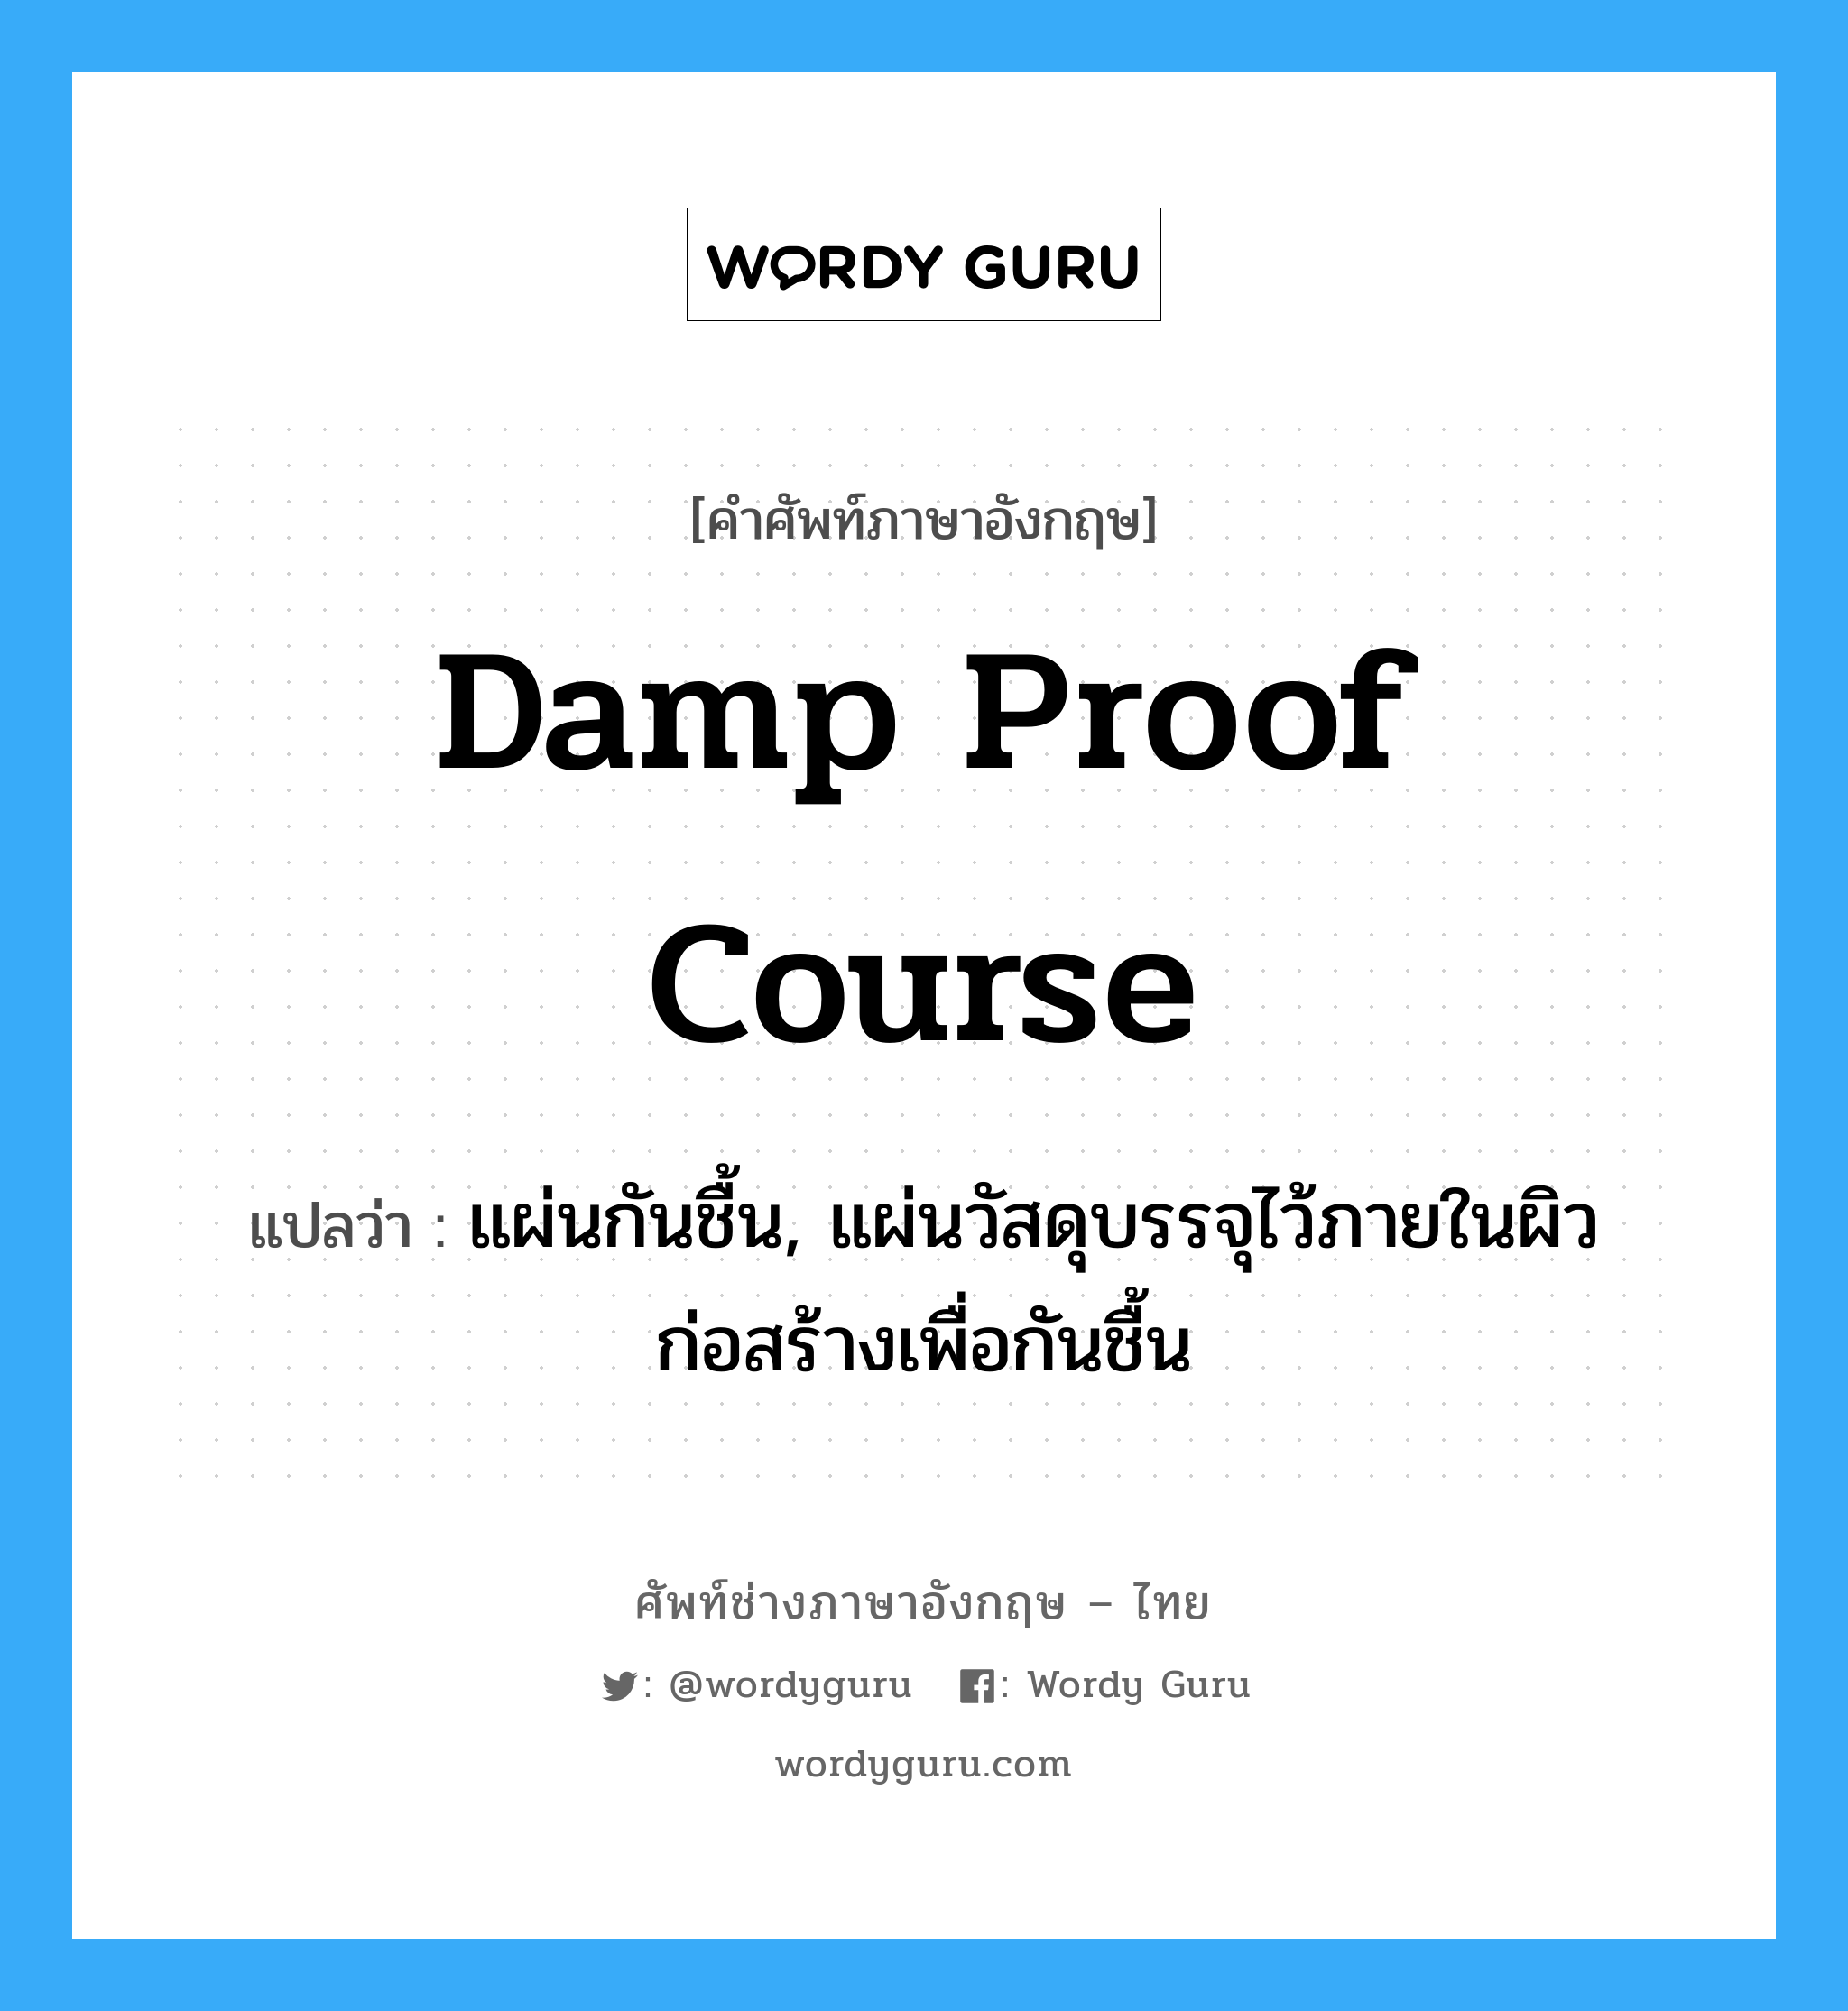 damp proof course แปลว่า?, คำศัพท์ช่างภาษาอังกฤษ - ไทย damp proof course คำศัพท์ภาษาอังกฤษ damp proof course แปลว่า แผ่นกันชื้น, แผ่นวัสดุบรรจุไว้ภายในผิวก่อสร้างเพื่อกันชื้น